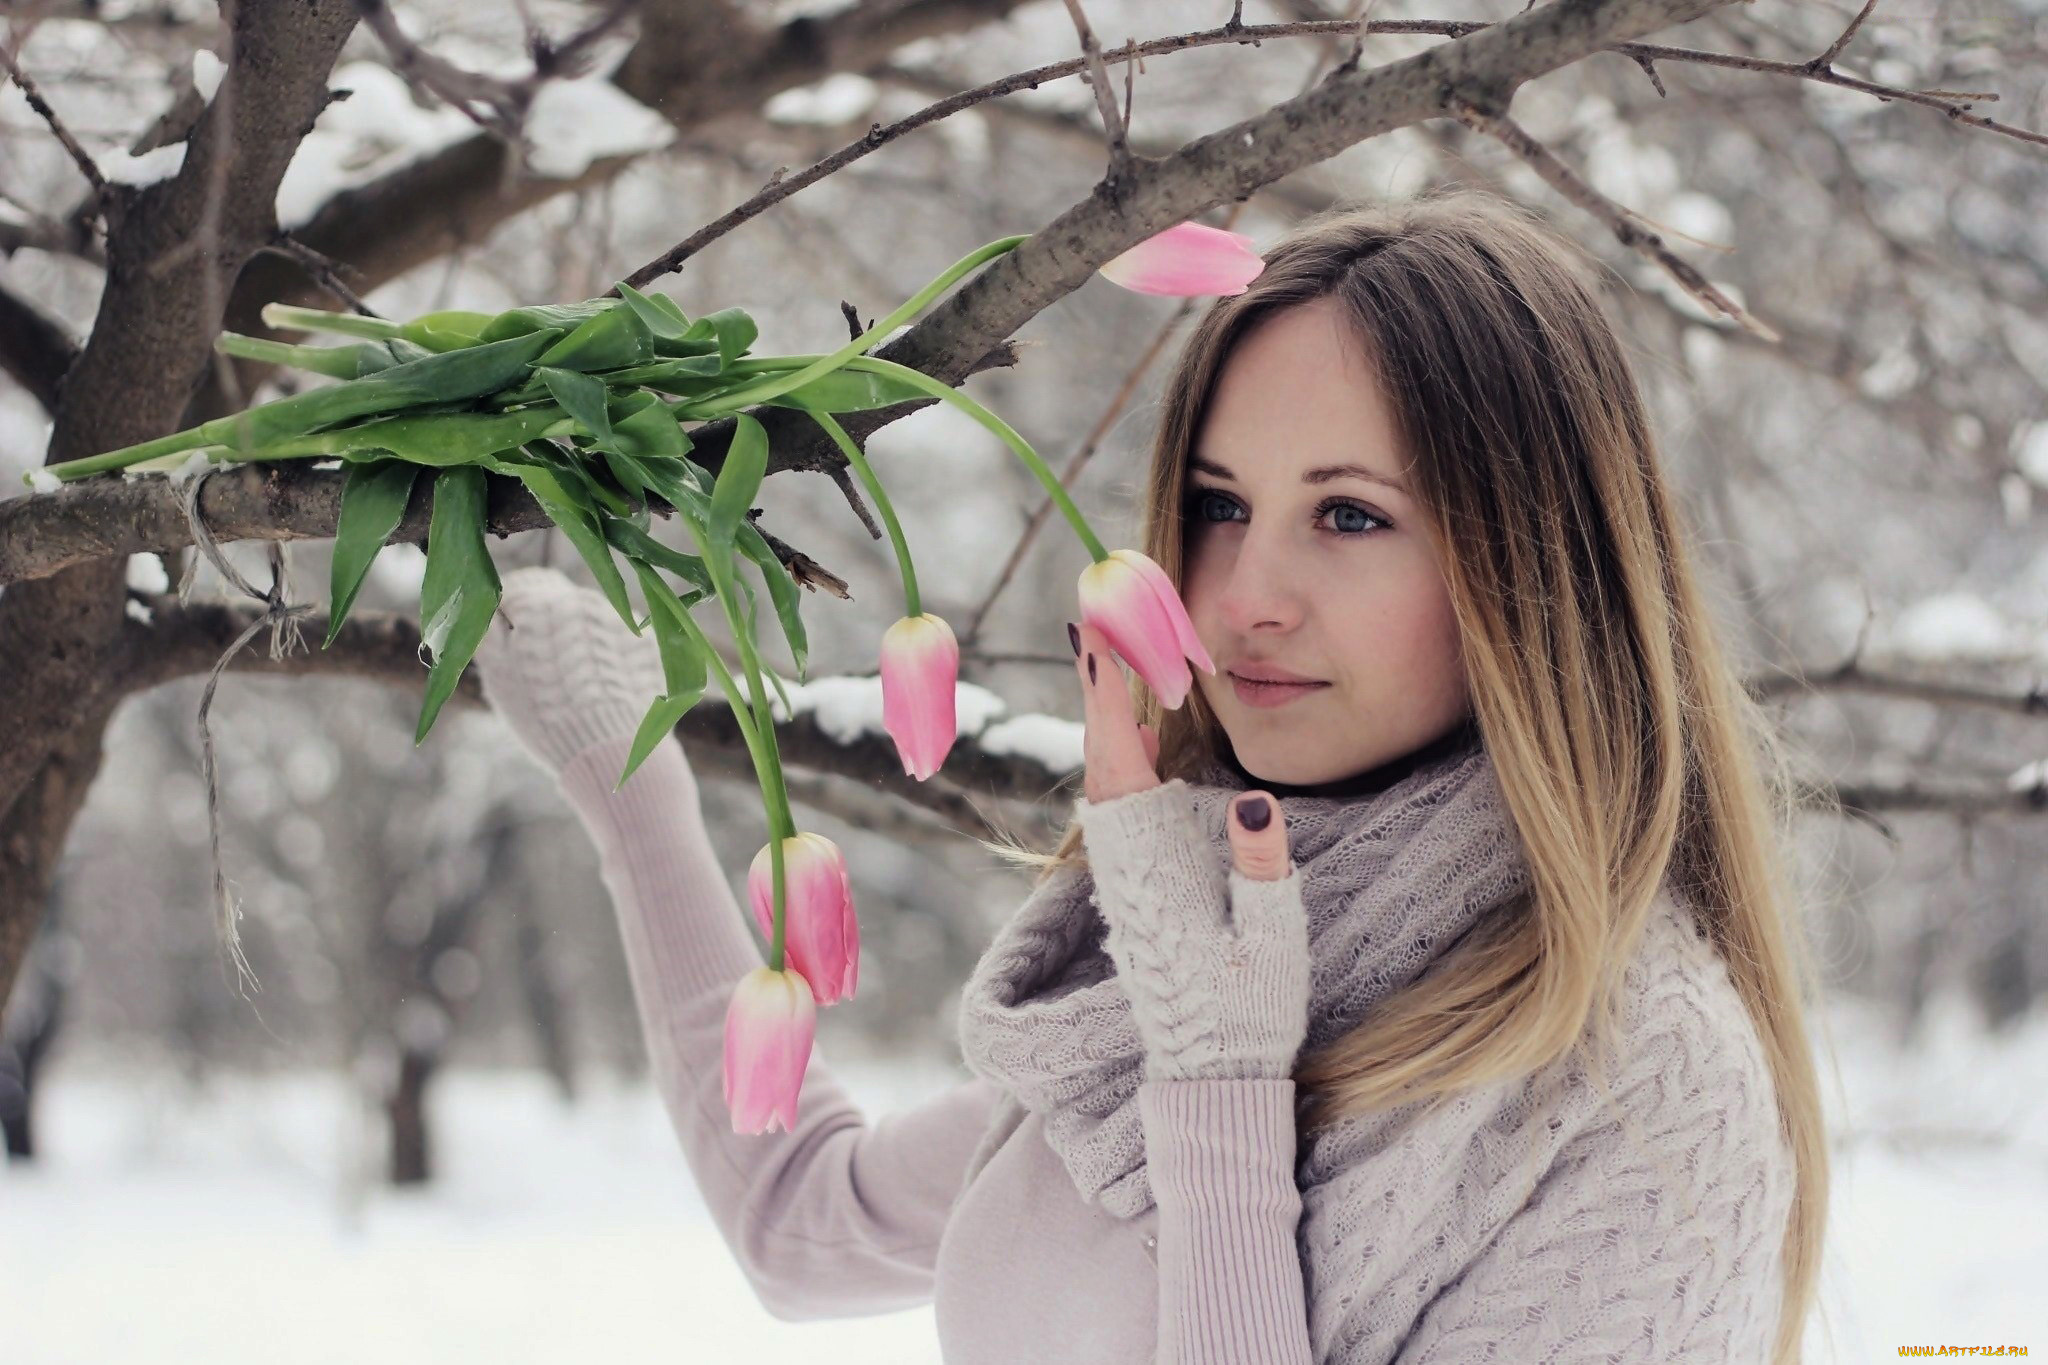 Фото с тюльпанами на улице. Зимняя фотосессия с цветами. Девушка весной.